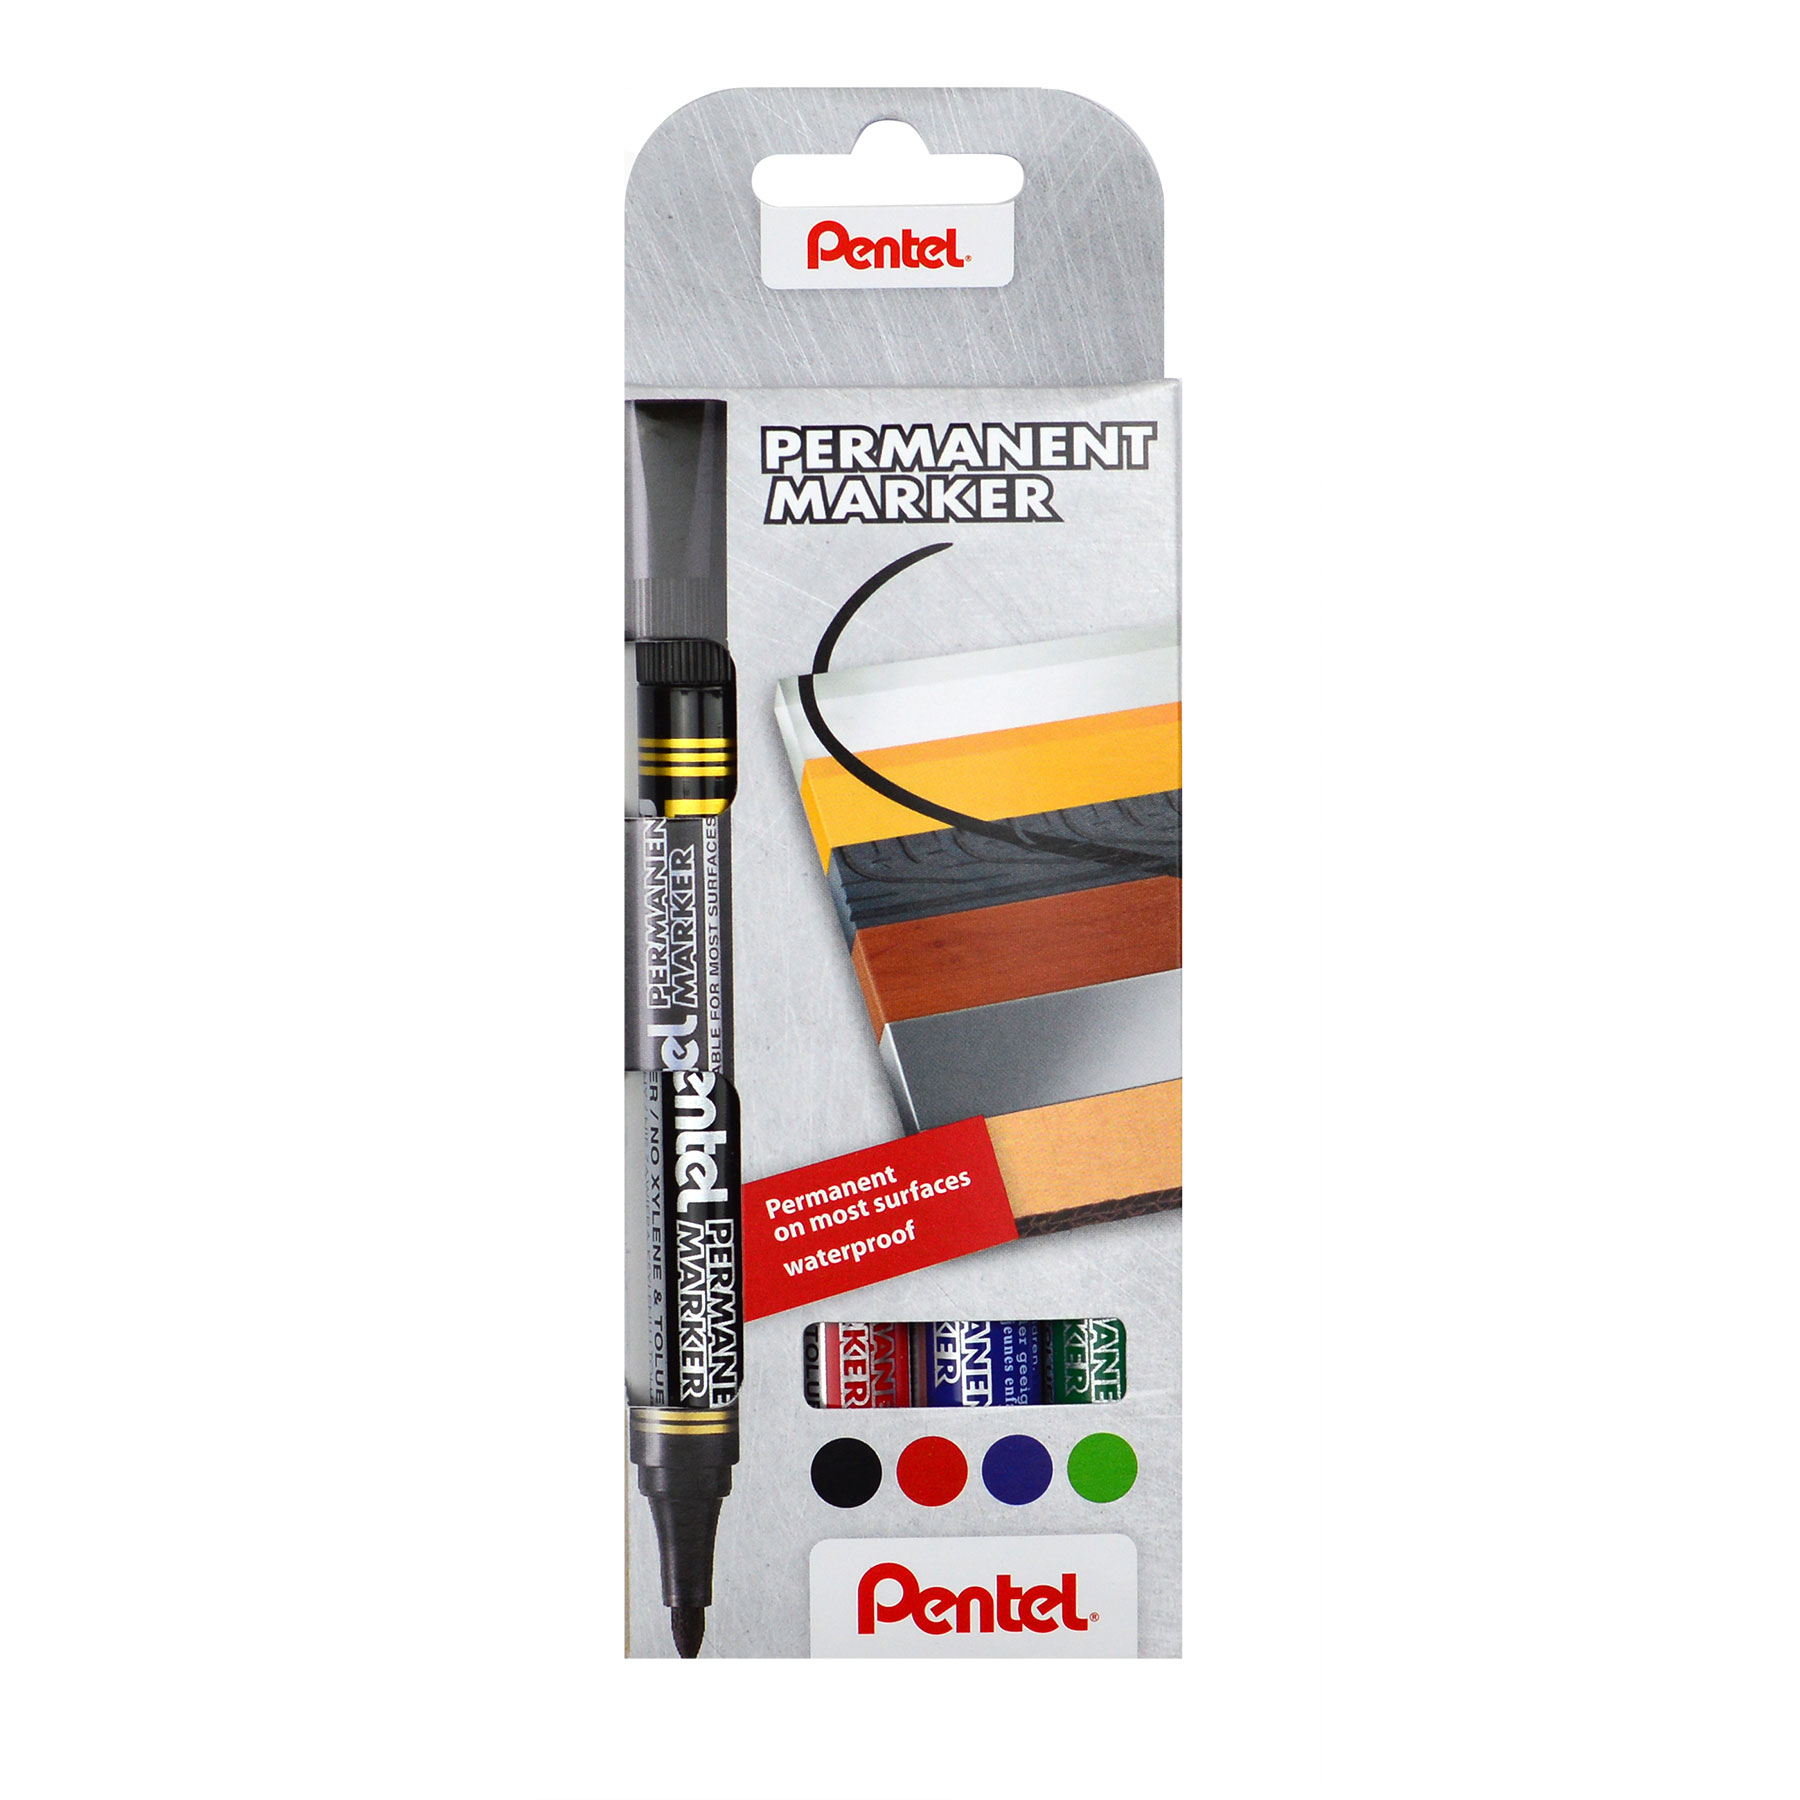 Popisovače Pentel Permanent Marker N850, permanentní, sada 4ks